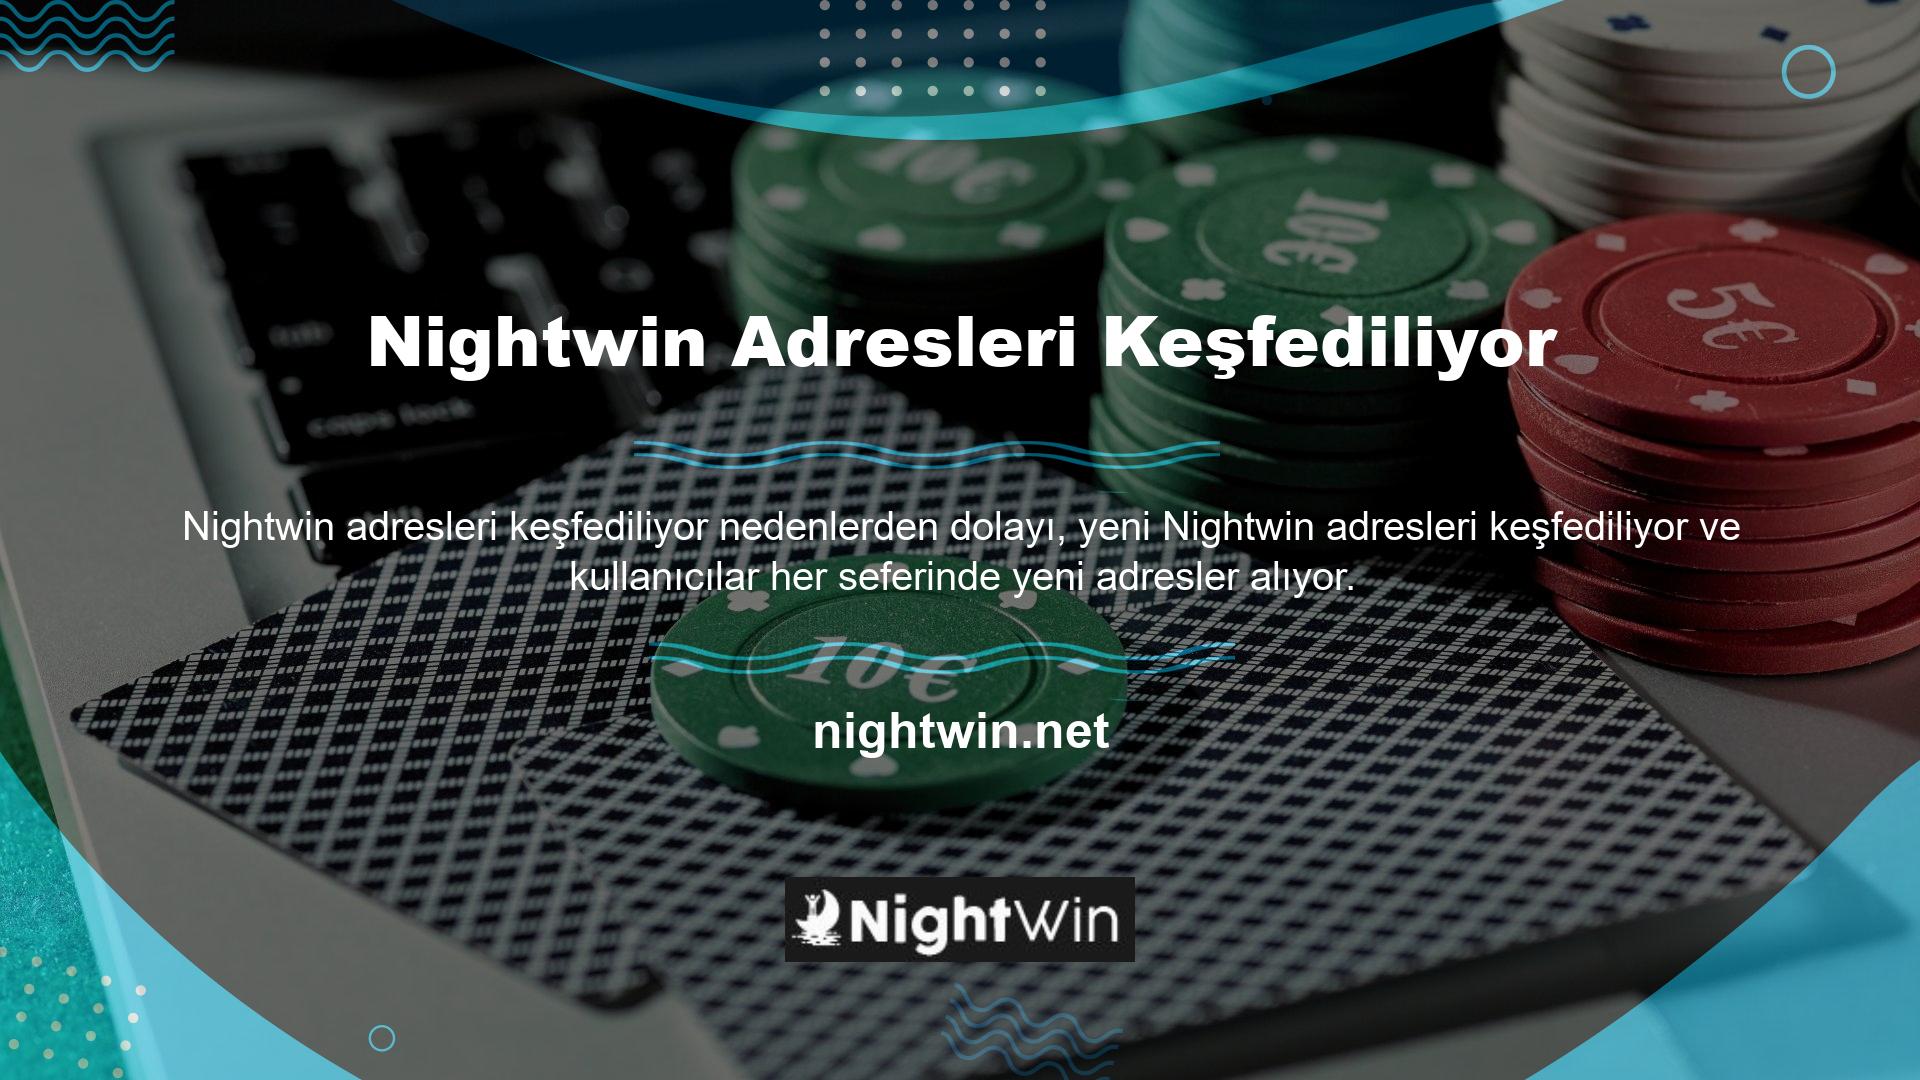 Yeni bir bağlantı terimi, yeni bir Nightwin yazısı, yeni bir adres ve Türkiye'de kullanılan adres bunun yerine Nightwin olarak belirlendi